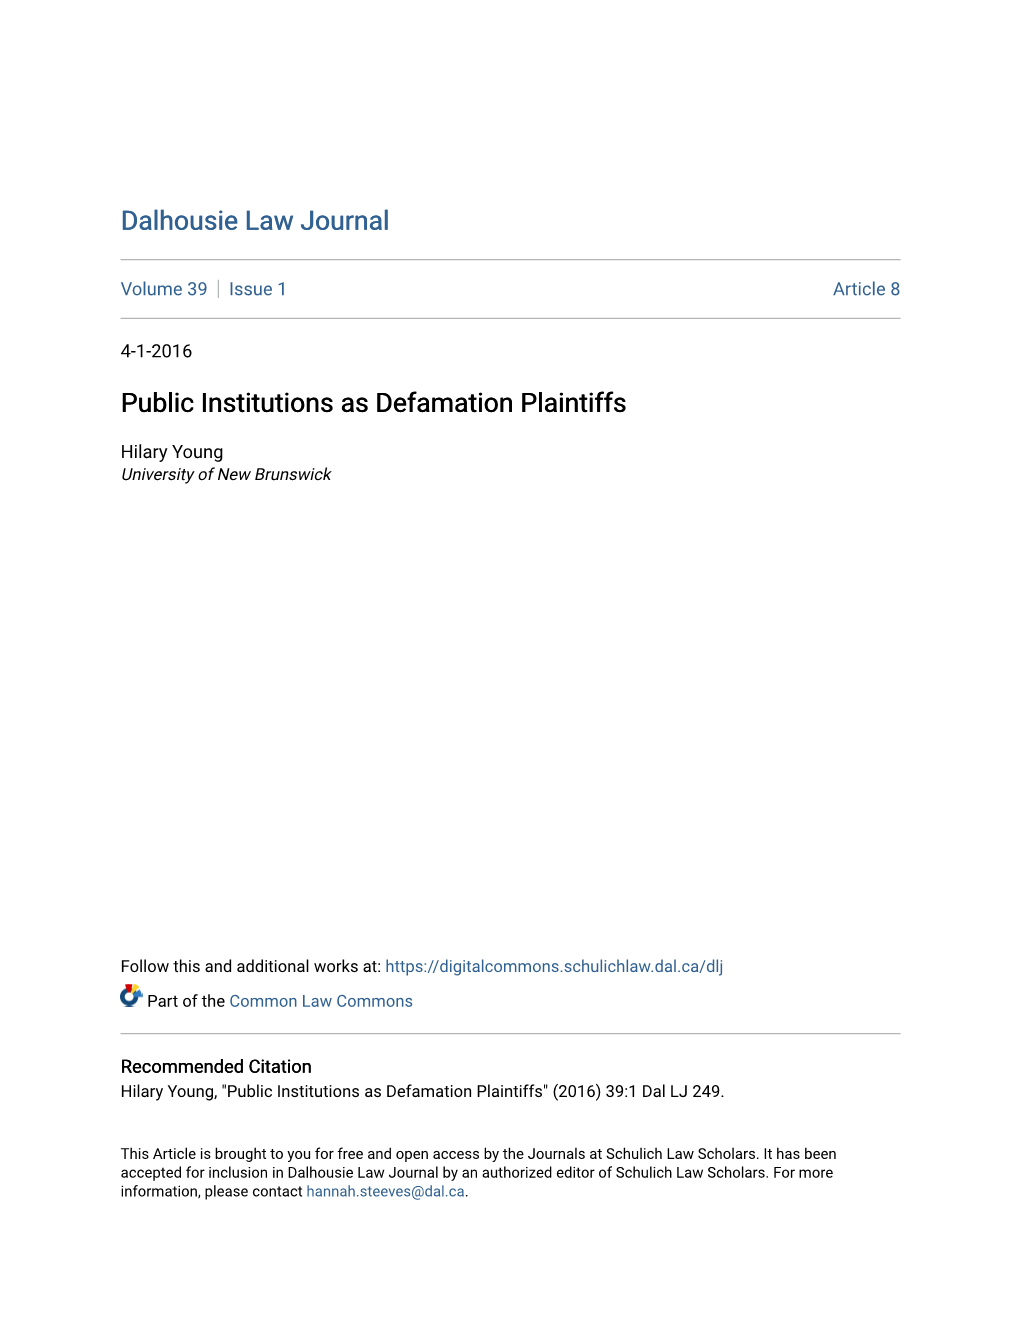 Public Institutions As Defamation Plaintiffs